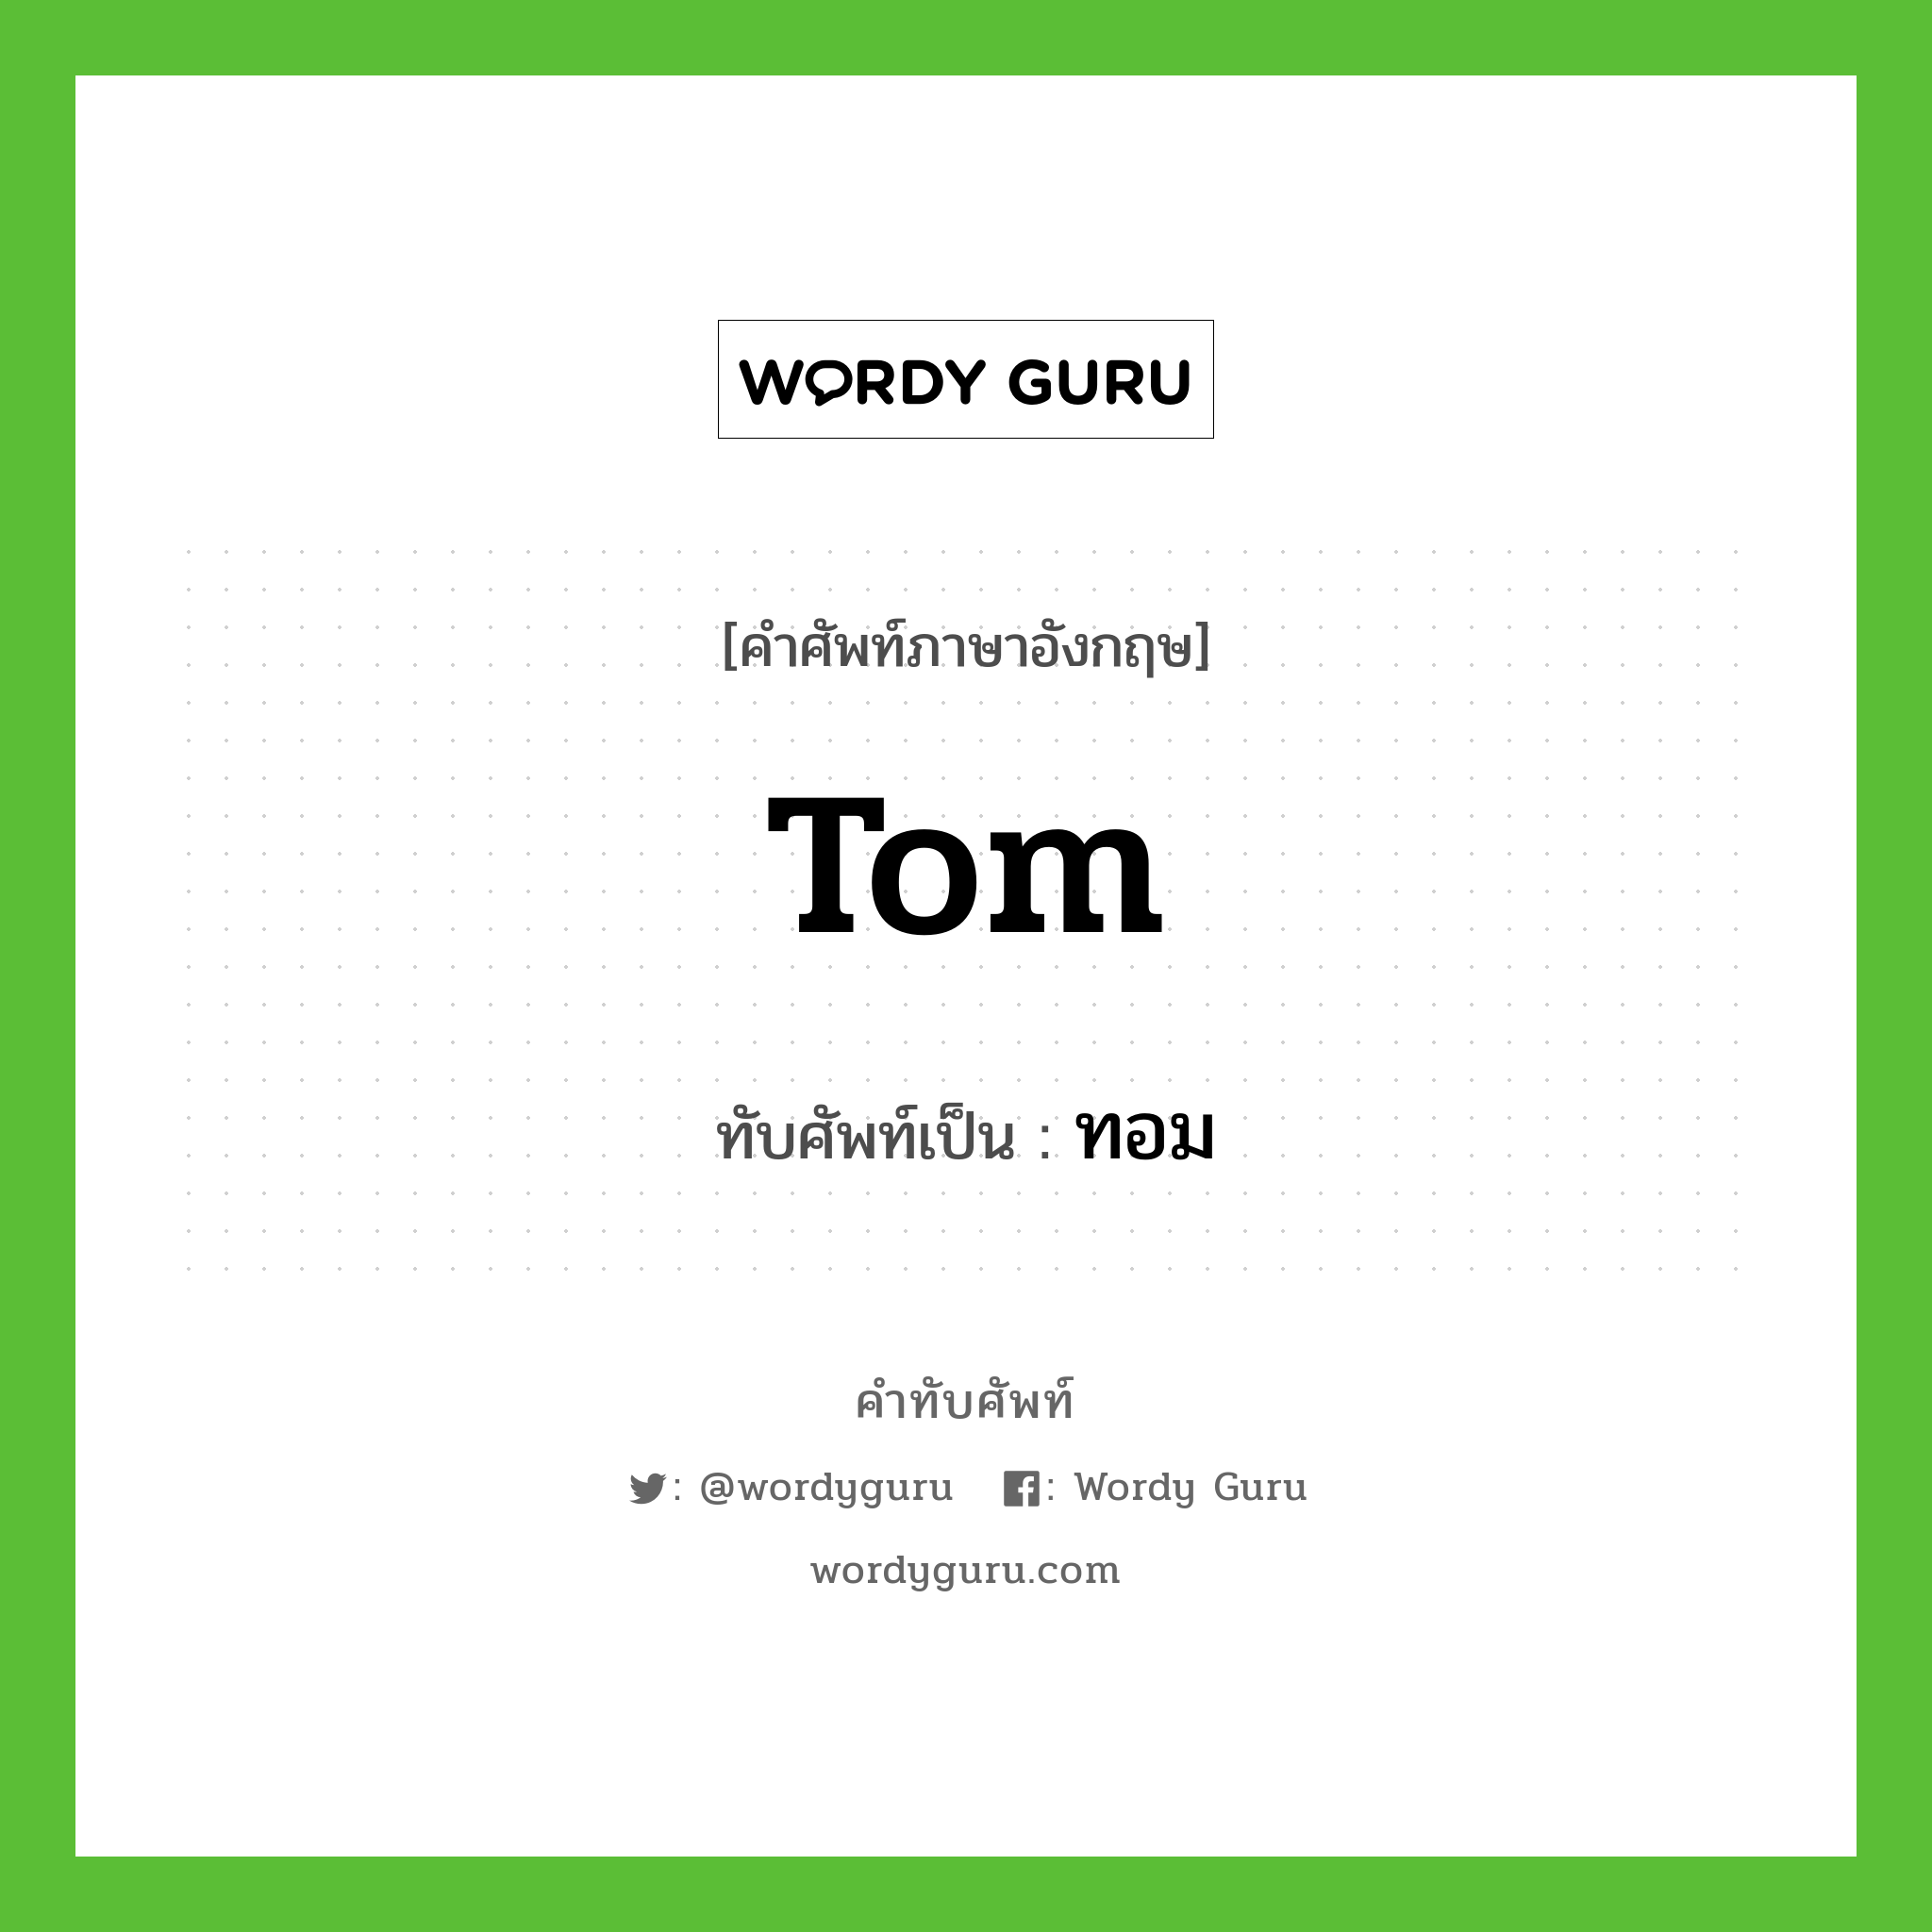 Tom เขียนเป็นคำไทยว่าอะไร?, คำศัพท์ภาษาอังกฤษ Tom ทับศัพท์เป็น ทอม